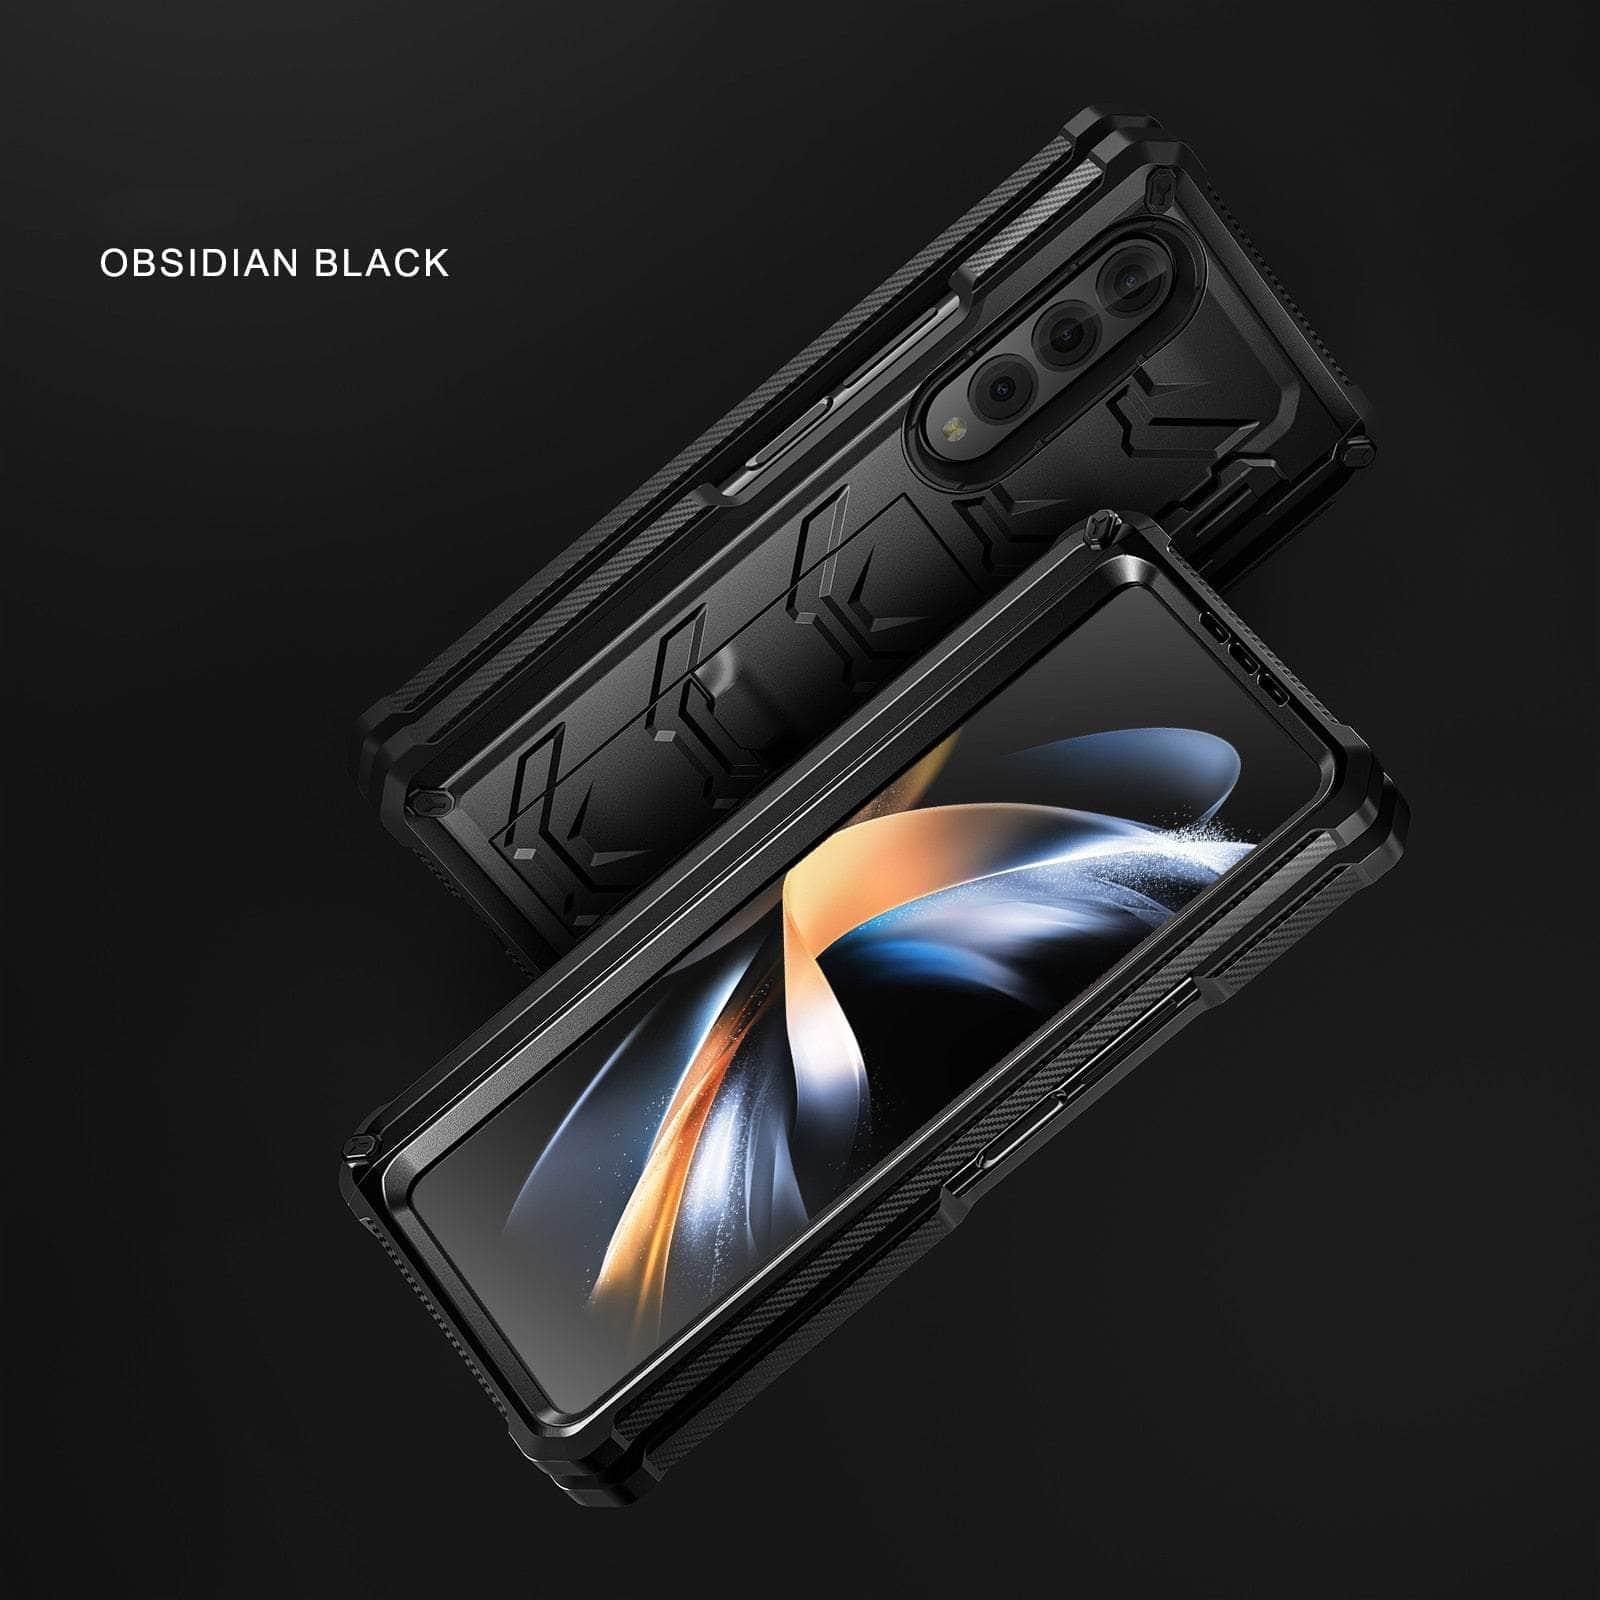 Casebuddy Galaxy Z 3 Fold Full-Body Dual Layer Rugged Case